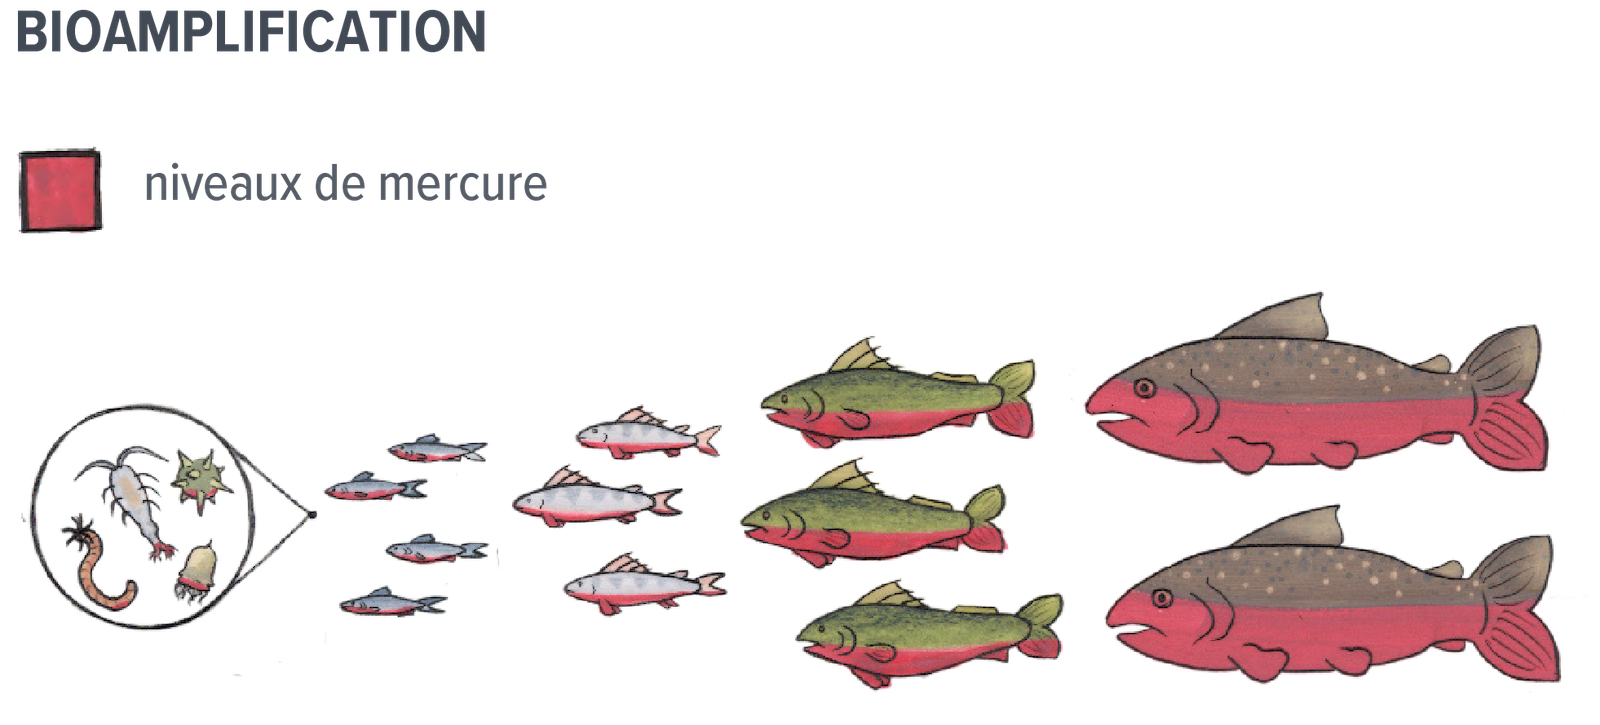 Un dessin illustrant cinq groupes différents de poissons et de petits organismes tels que le zooplancton, avec les plus petits organismes à gauche et des poissons de plus en plus gros à droite. Une échelle de temps indique l'augmentation des niveaux de mercure lorsque les prédateurs se nourrissent de proies plus petites.